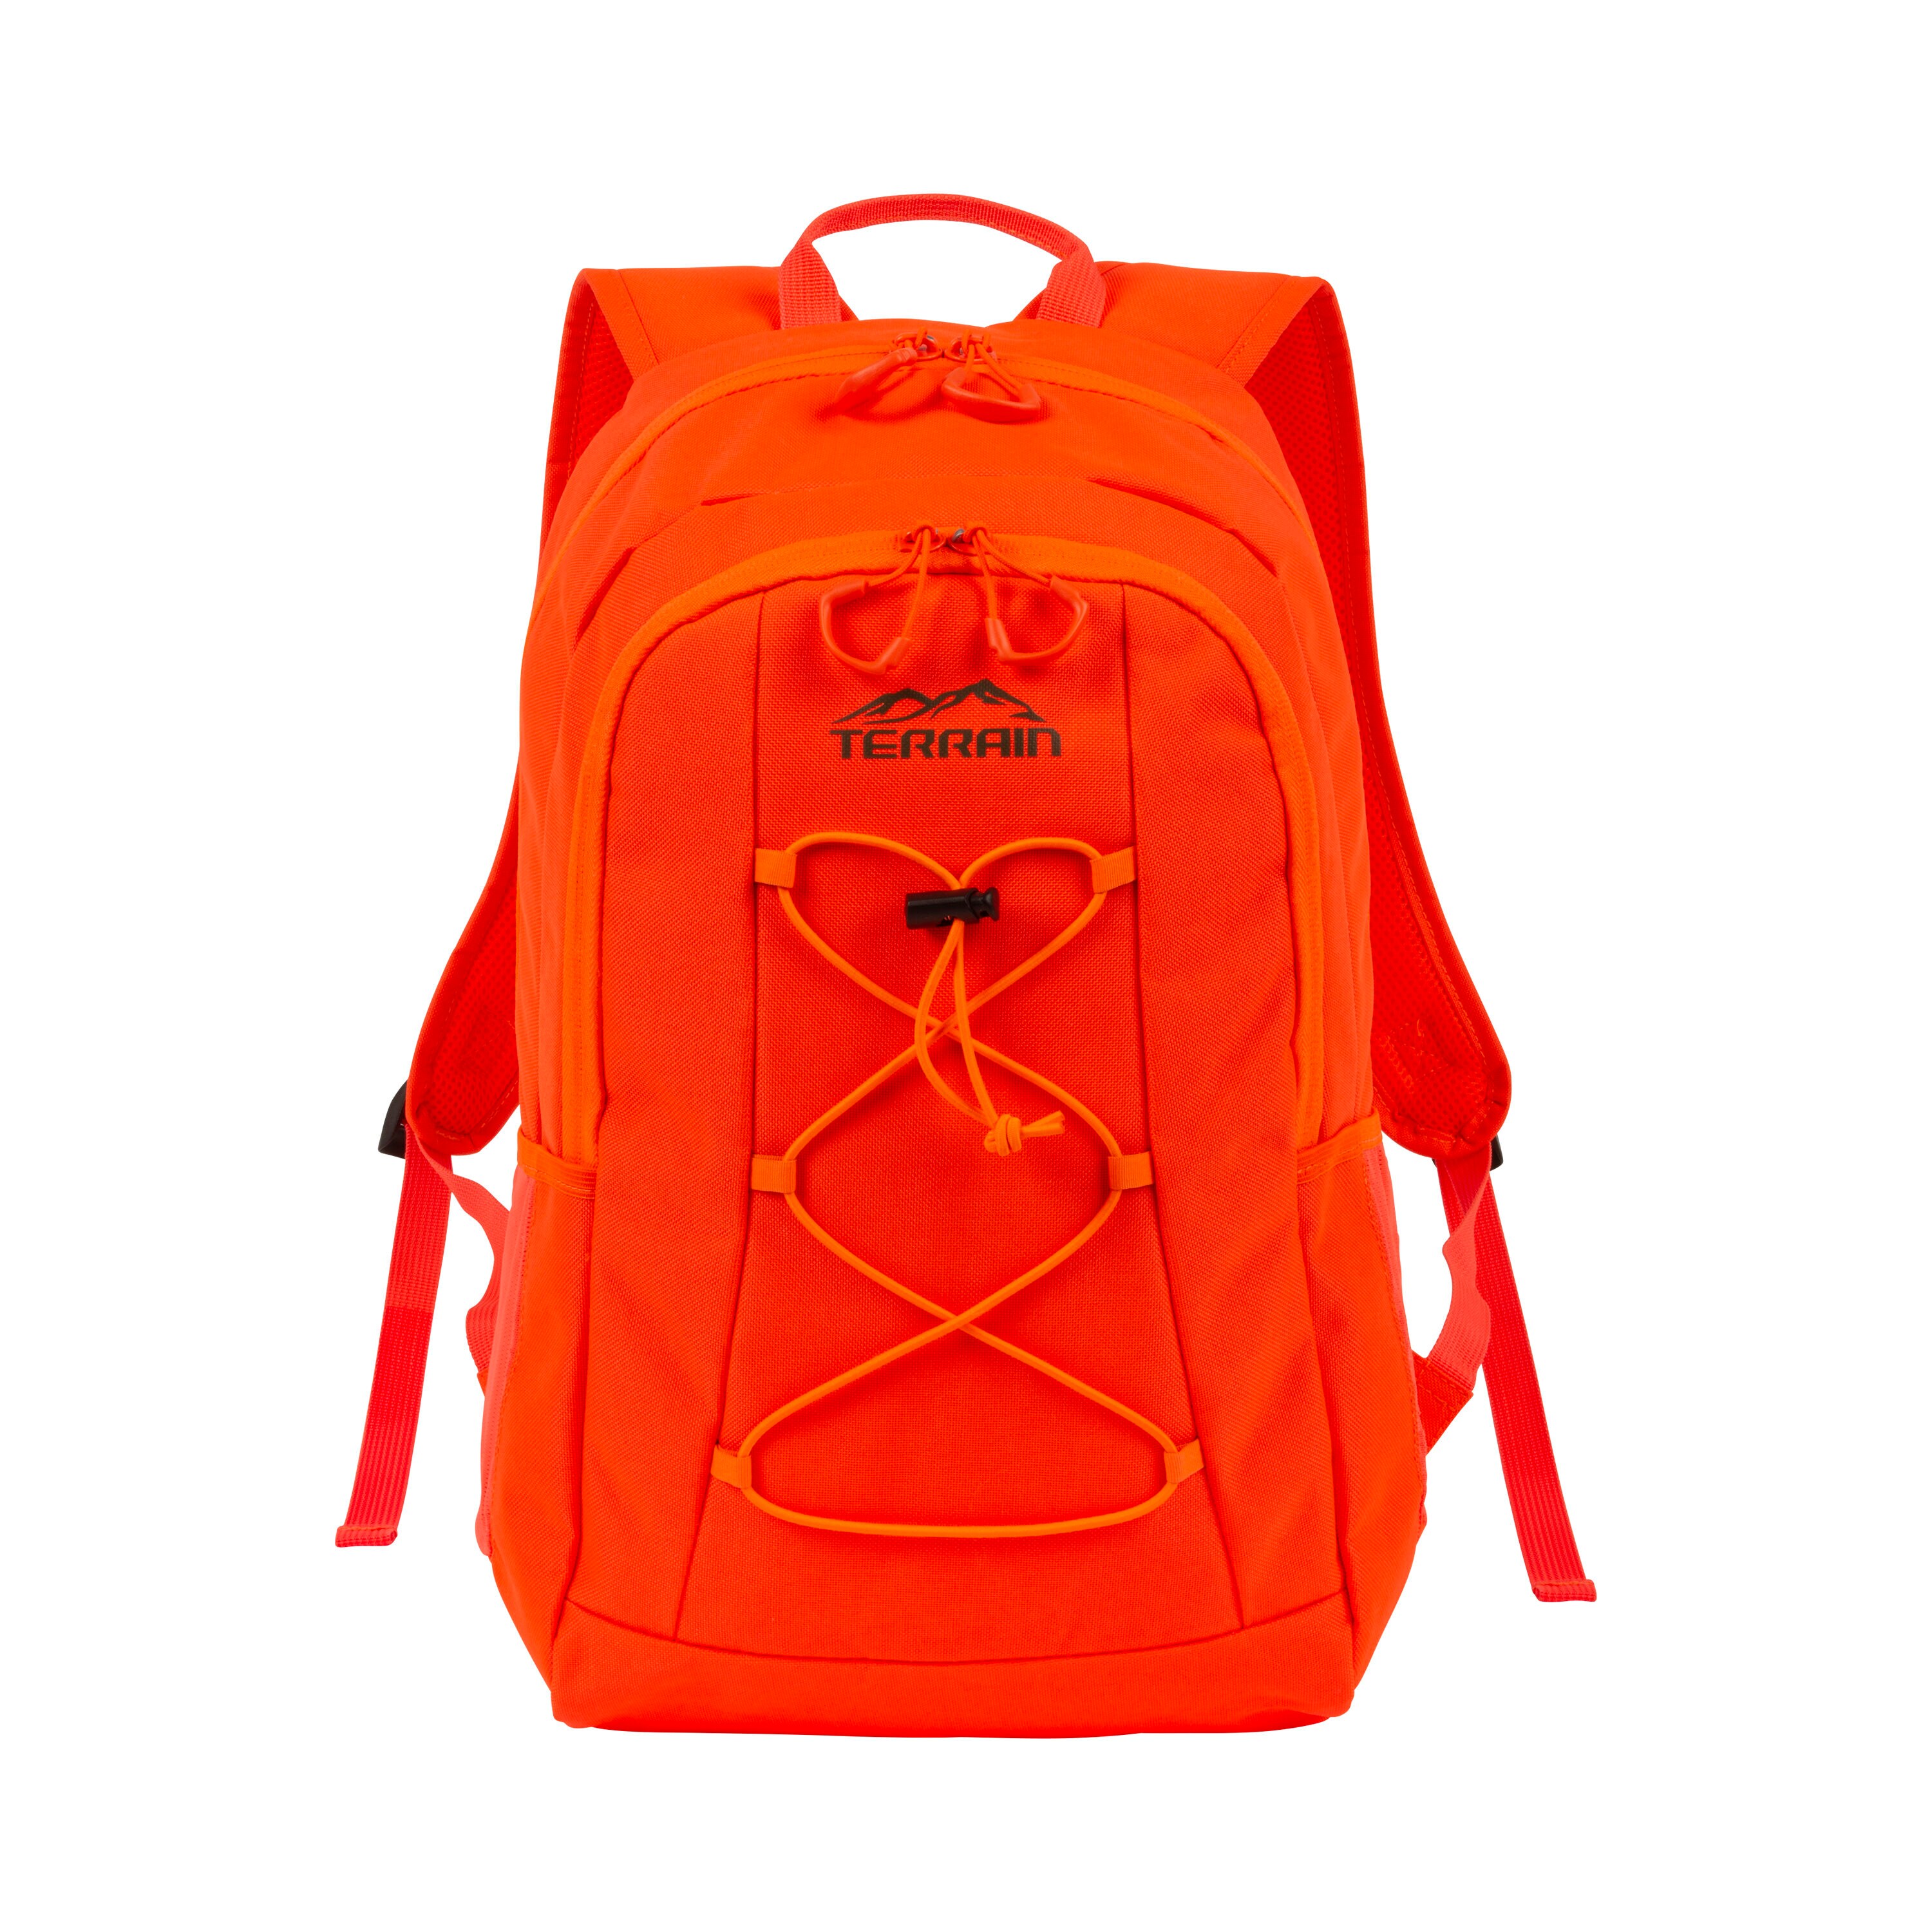 Terrain™ Delta Backpack & Daypack, Mossy Oak® Break-Up Blaze™